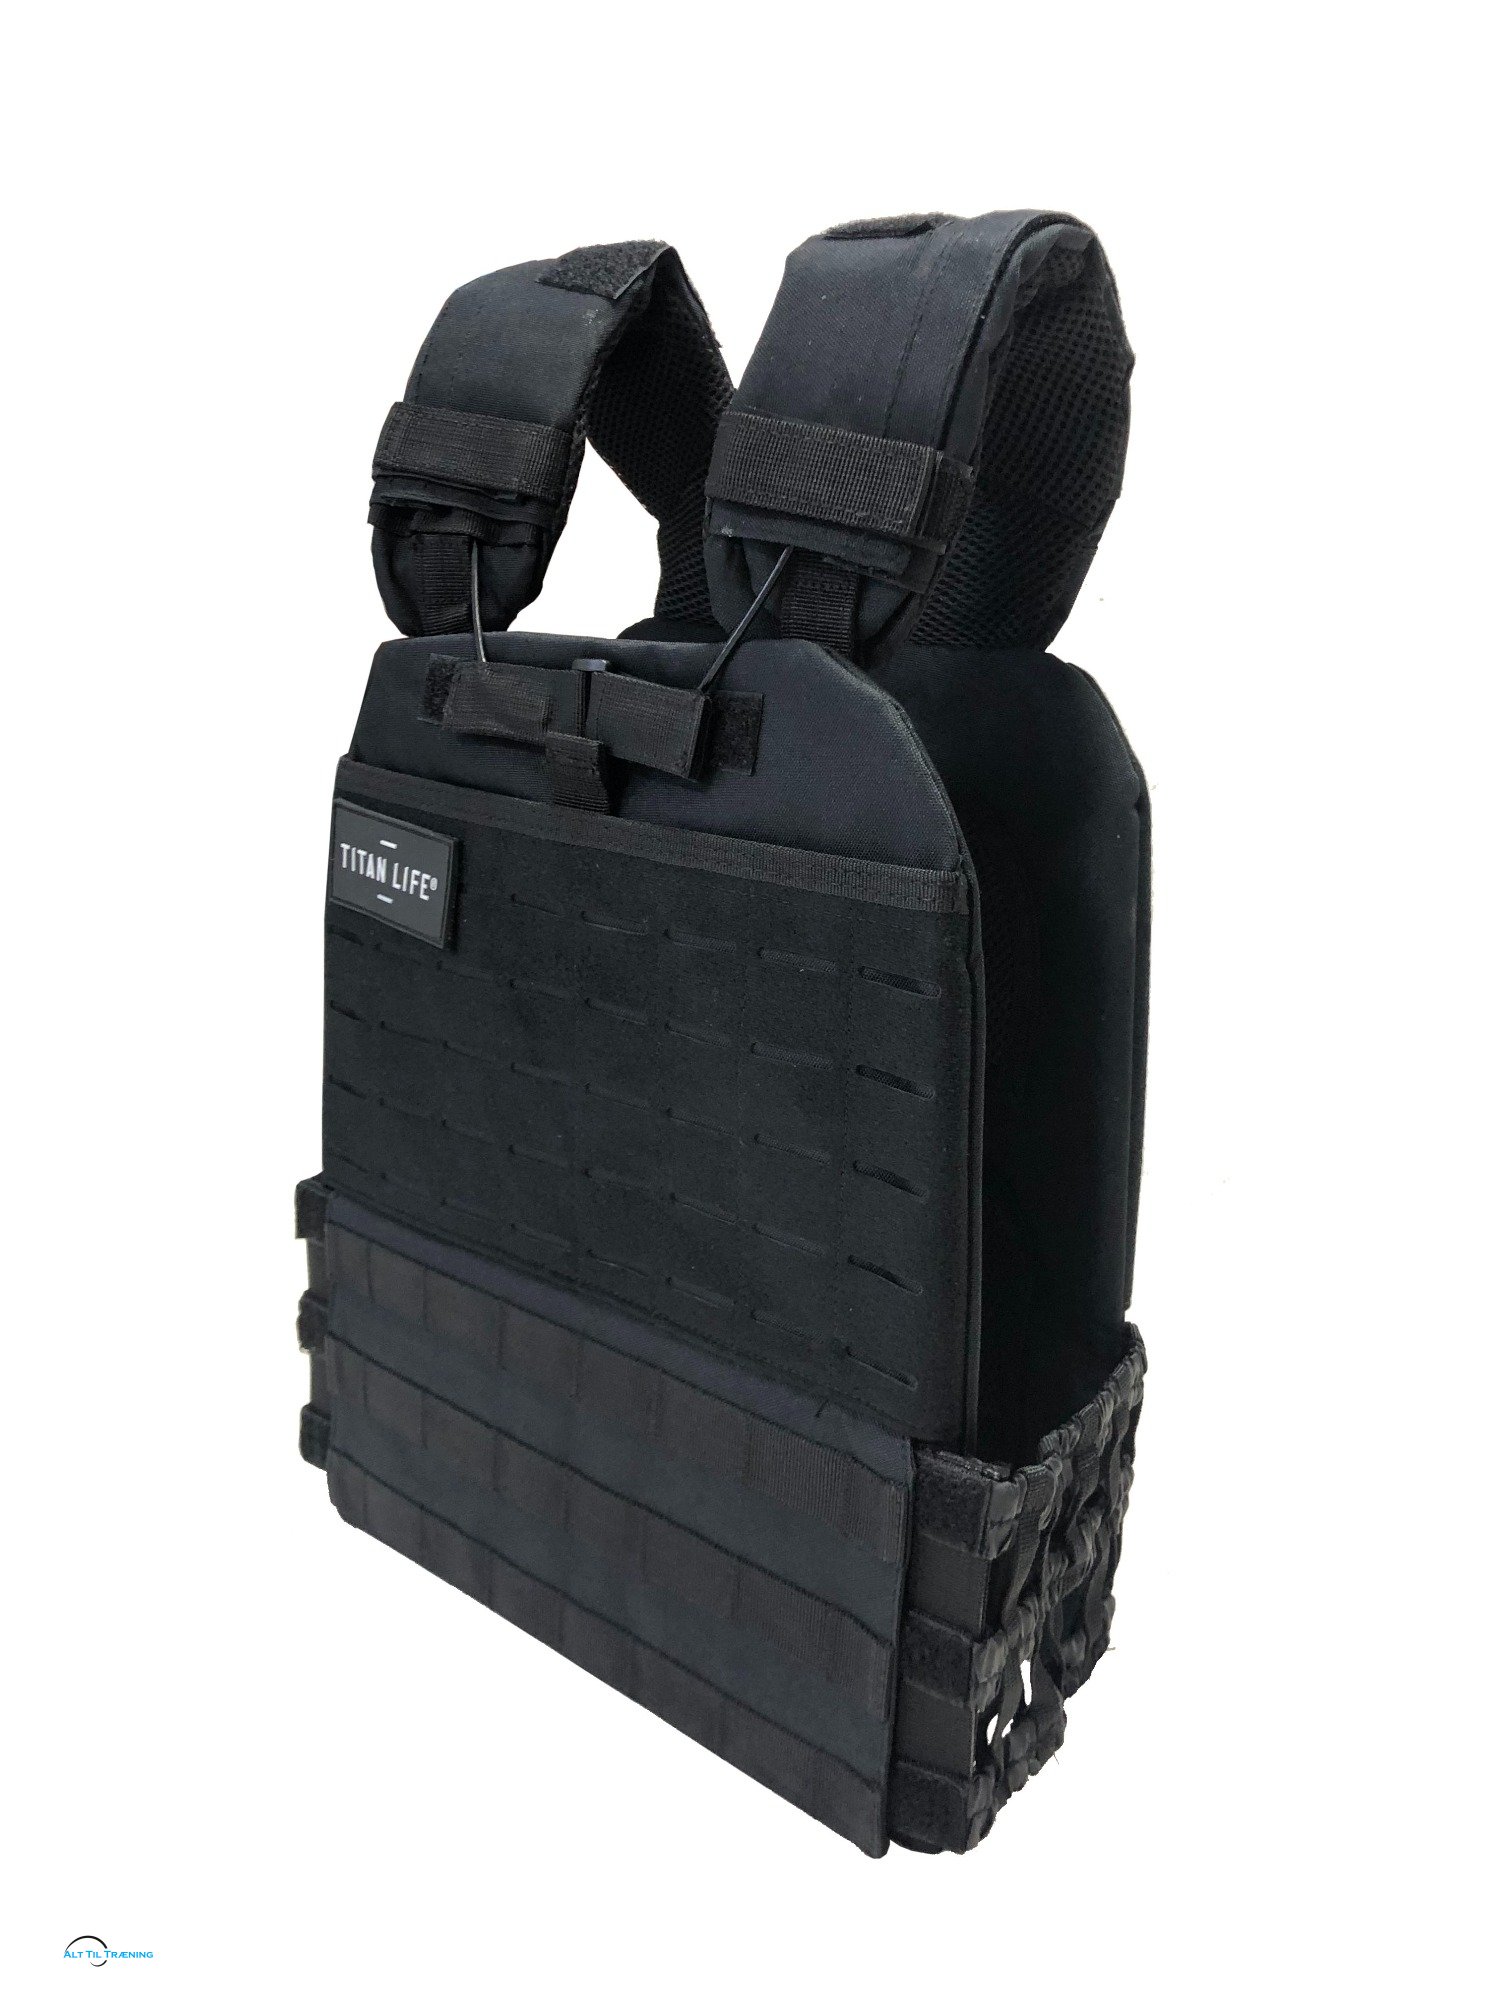 TITAN LIFE Tactical Vest 9,5 Kg., Black